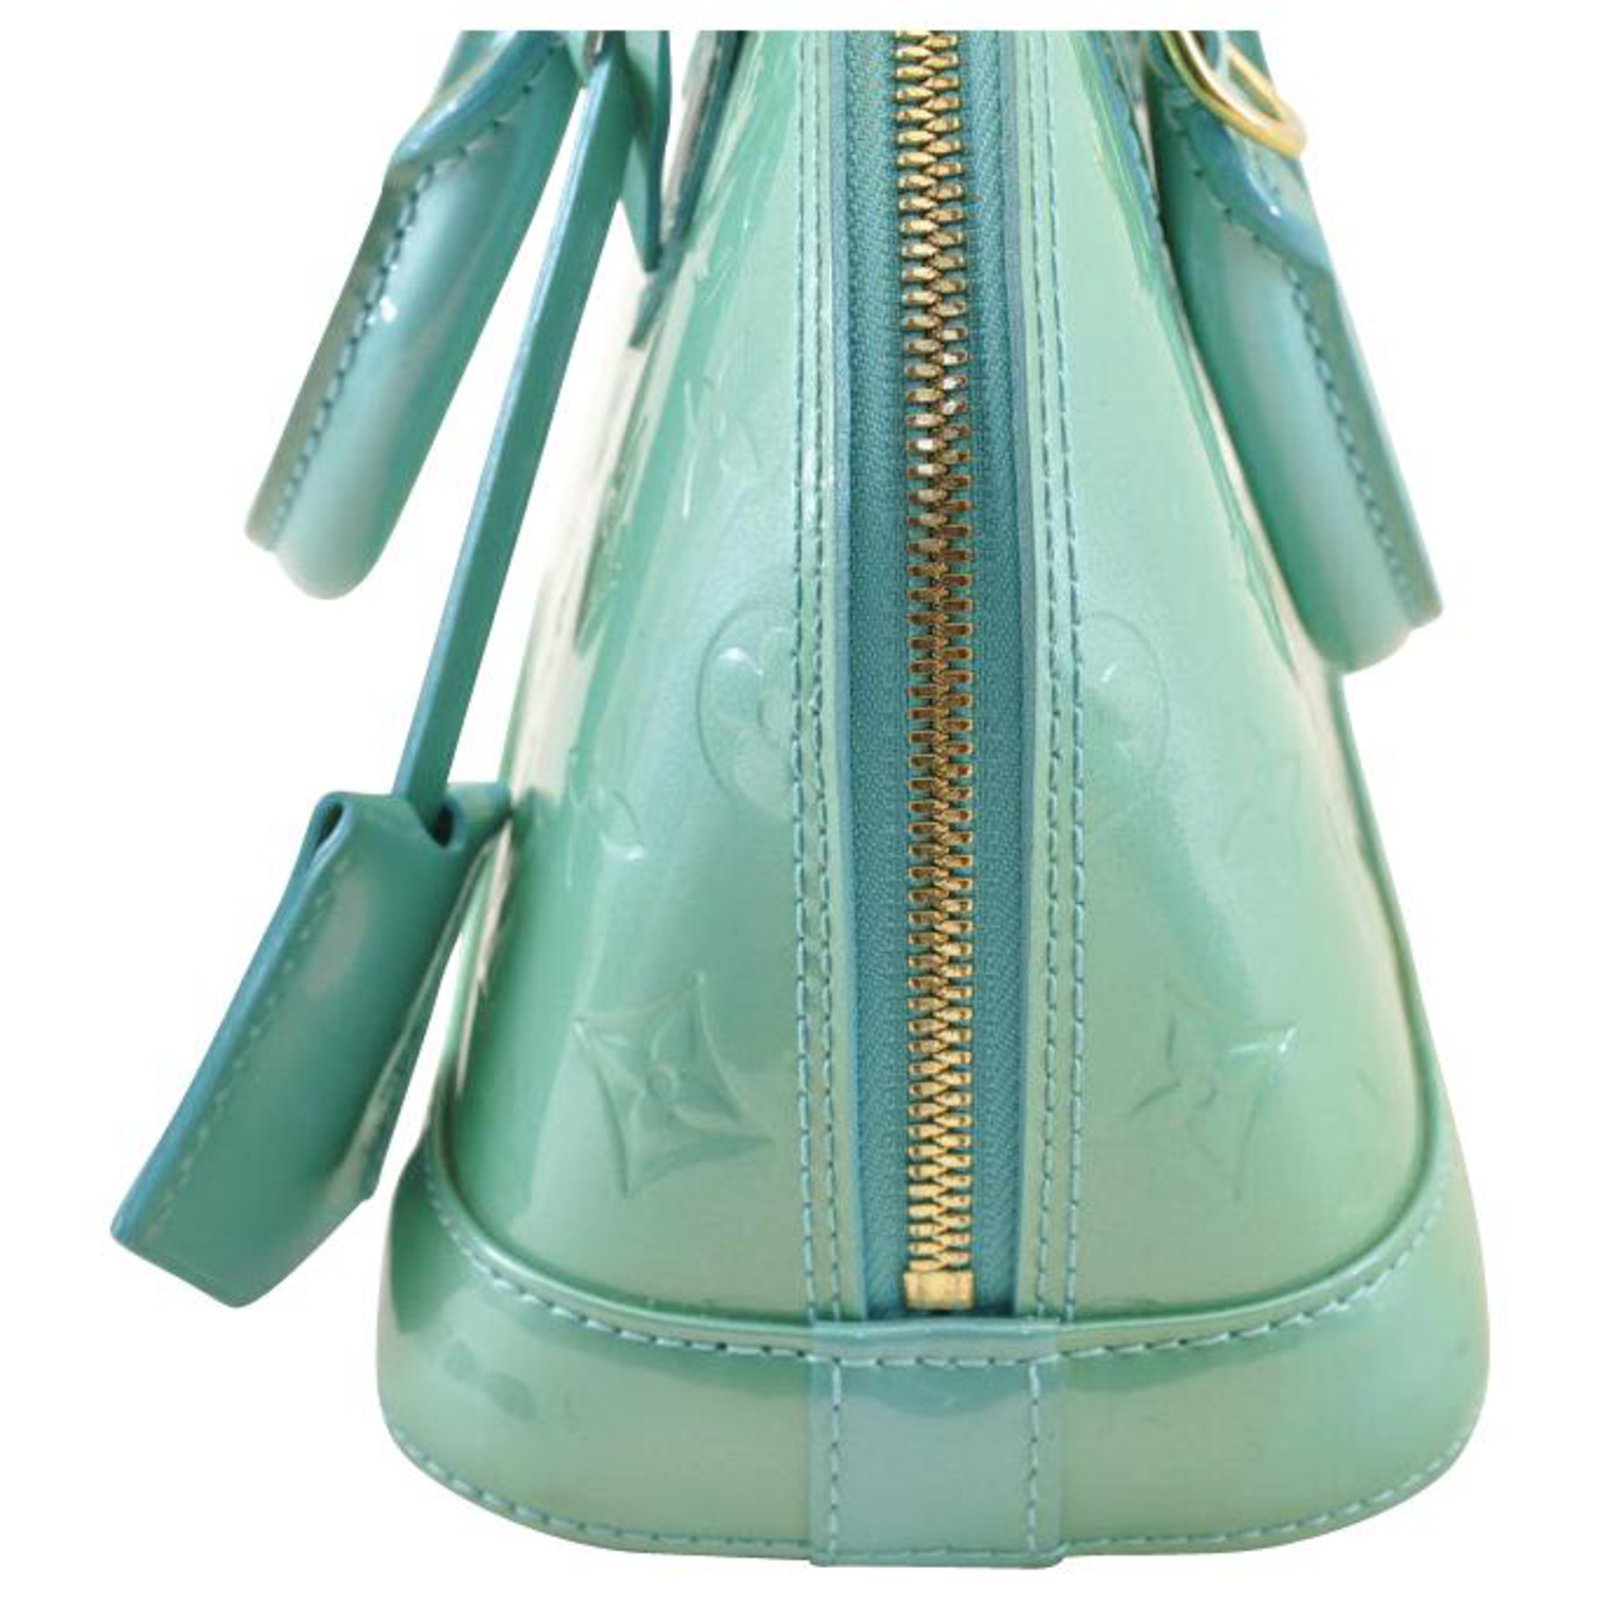 Louis Vuitton Turquois Vernis Alma BB Bag – Bagaholic